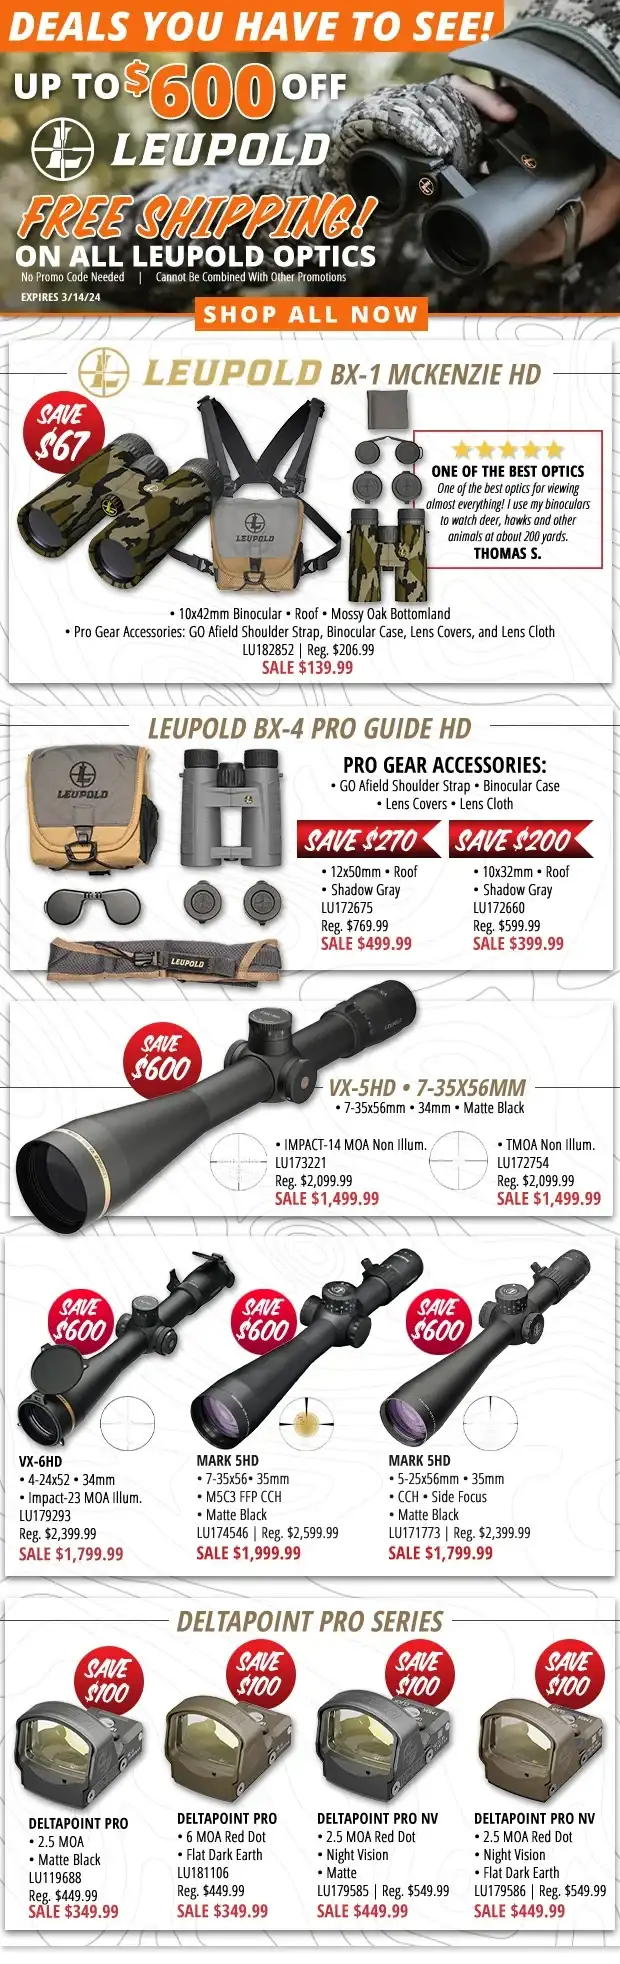 Up to \\$600 Off Leupold Optics!